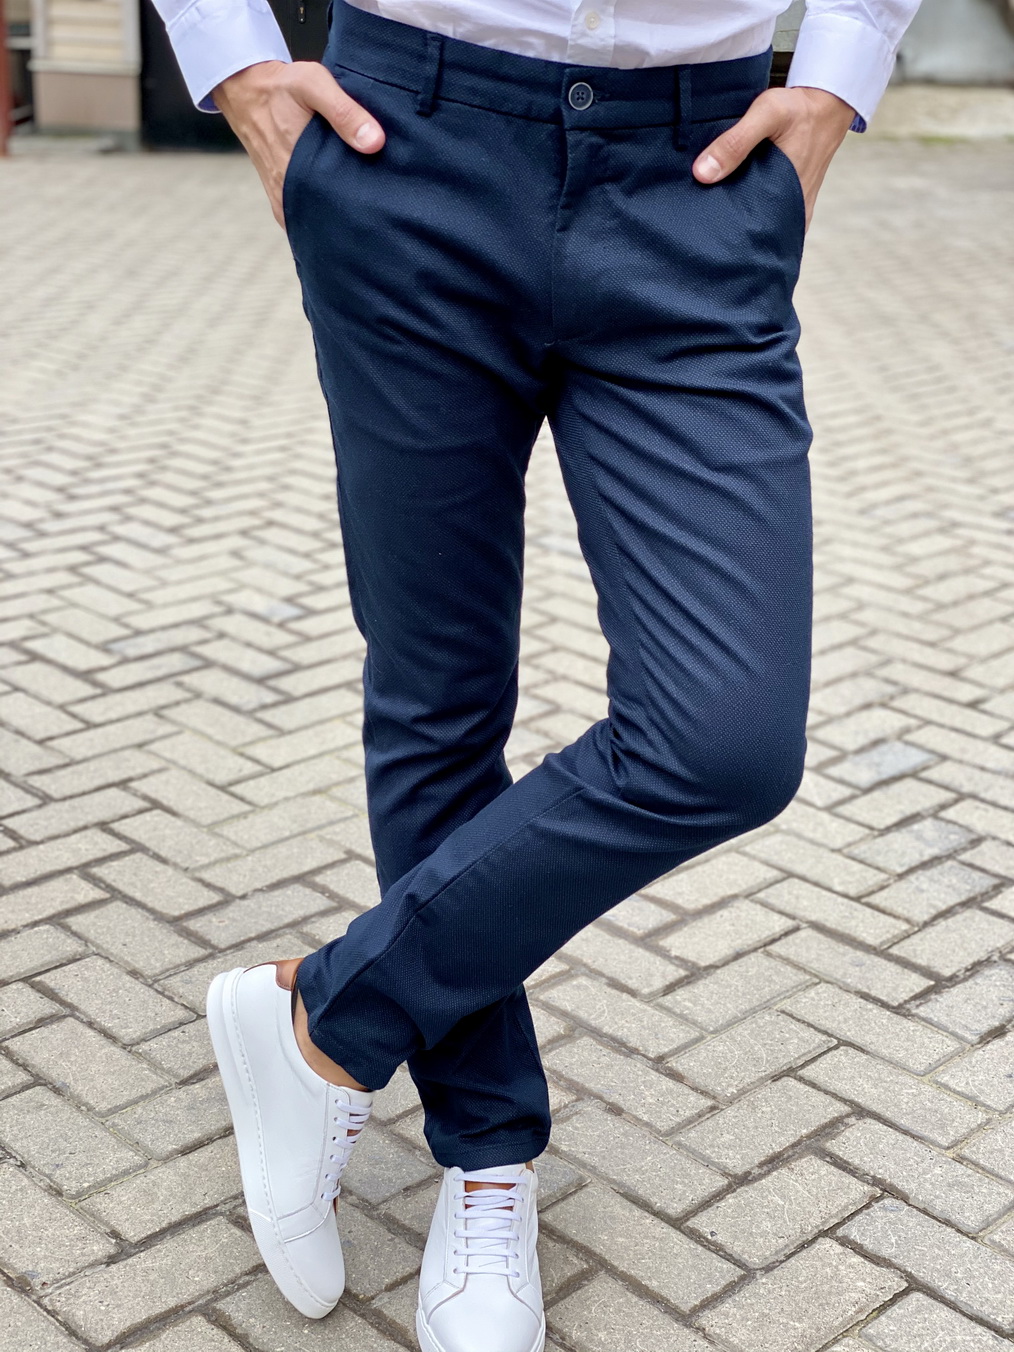 Мужские брюки чинос синего цвета. Арт.:6-1670-2 – купить в магазине мужскойодежды Smartcasuals